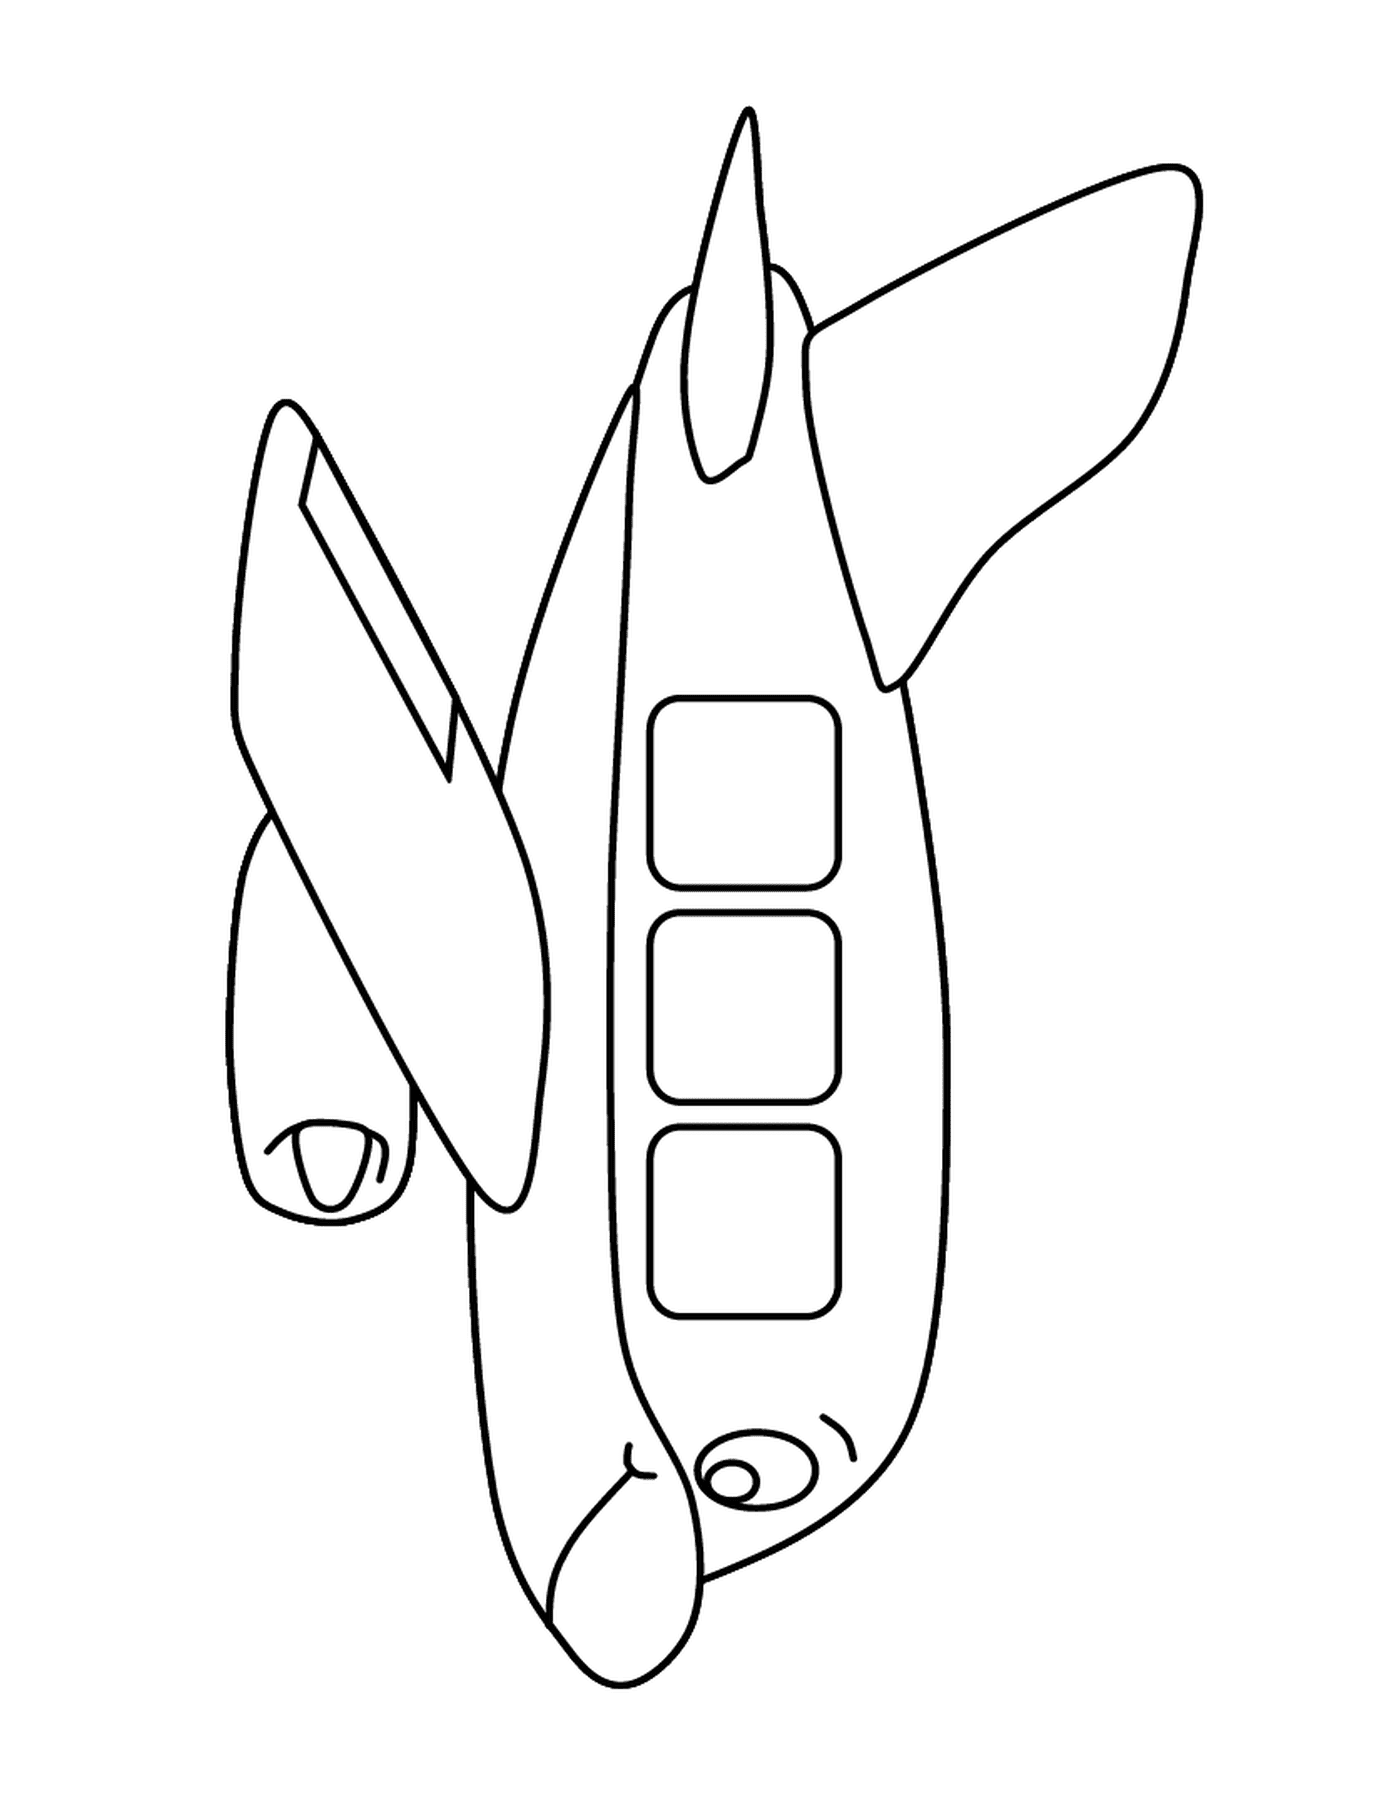  A plane 